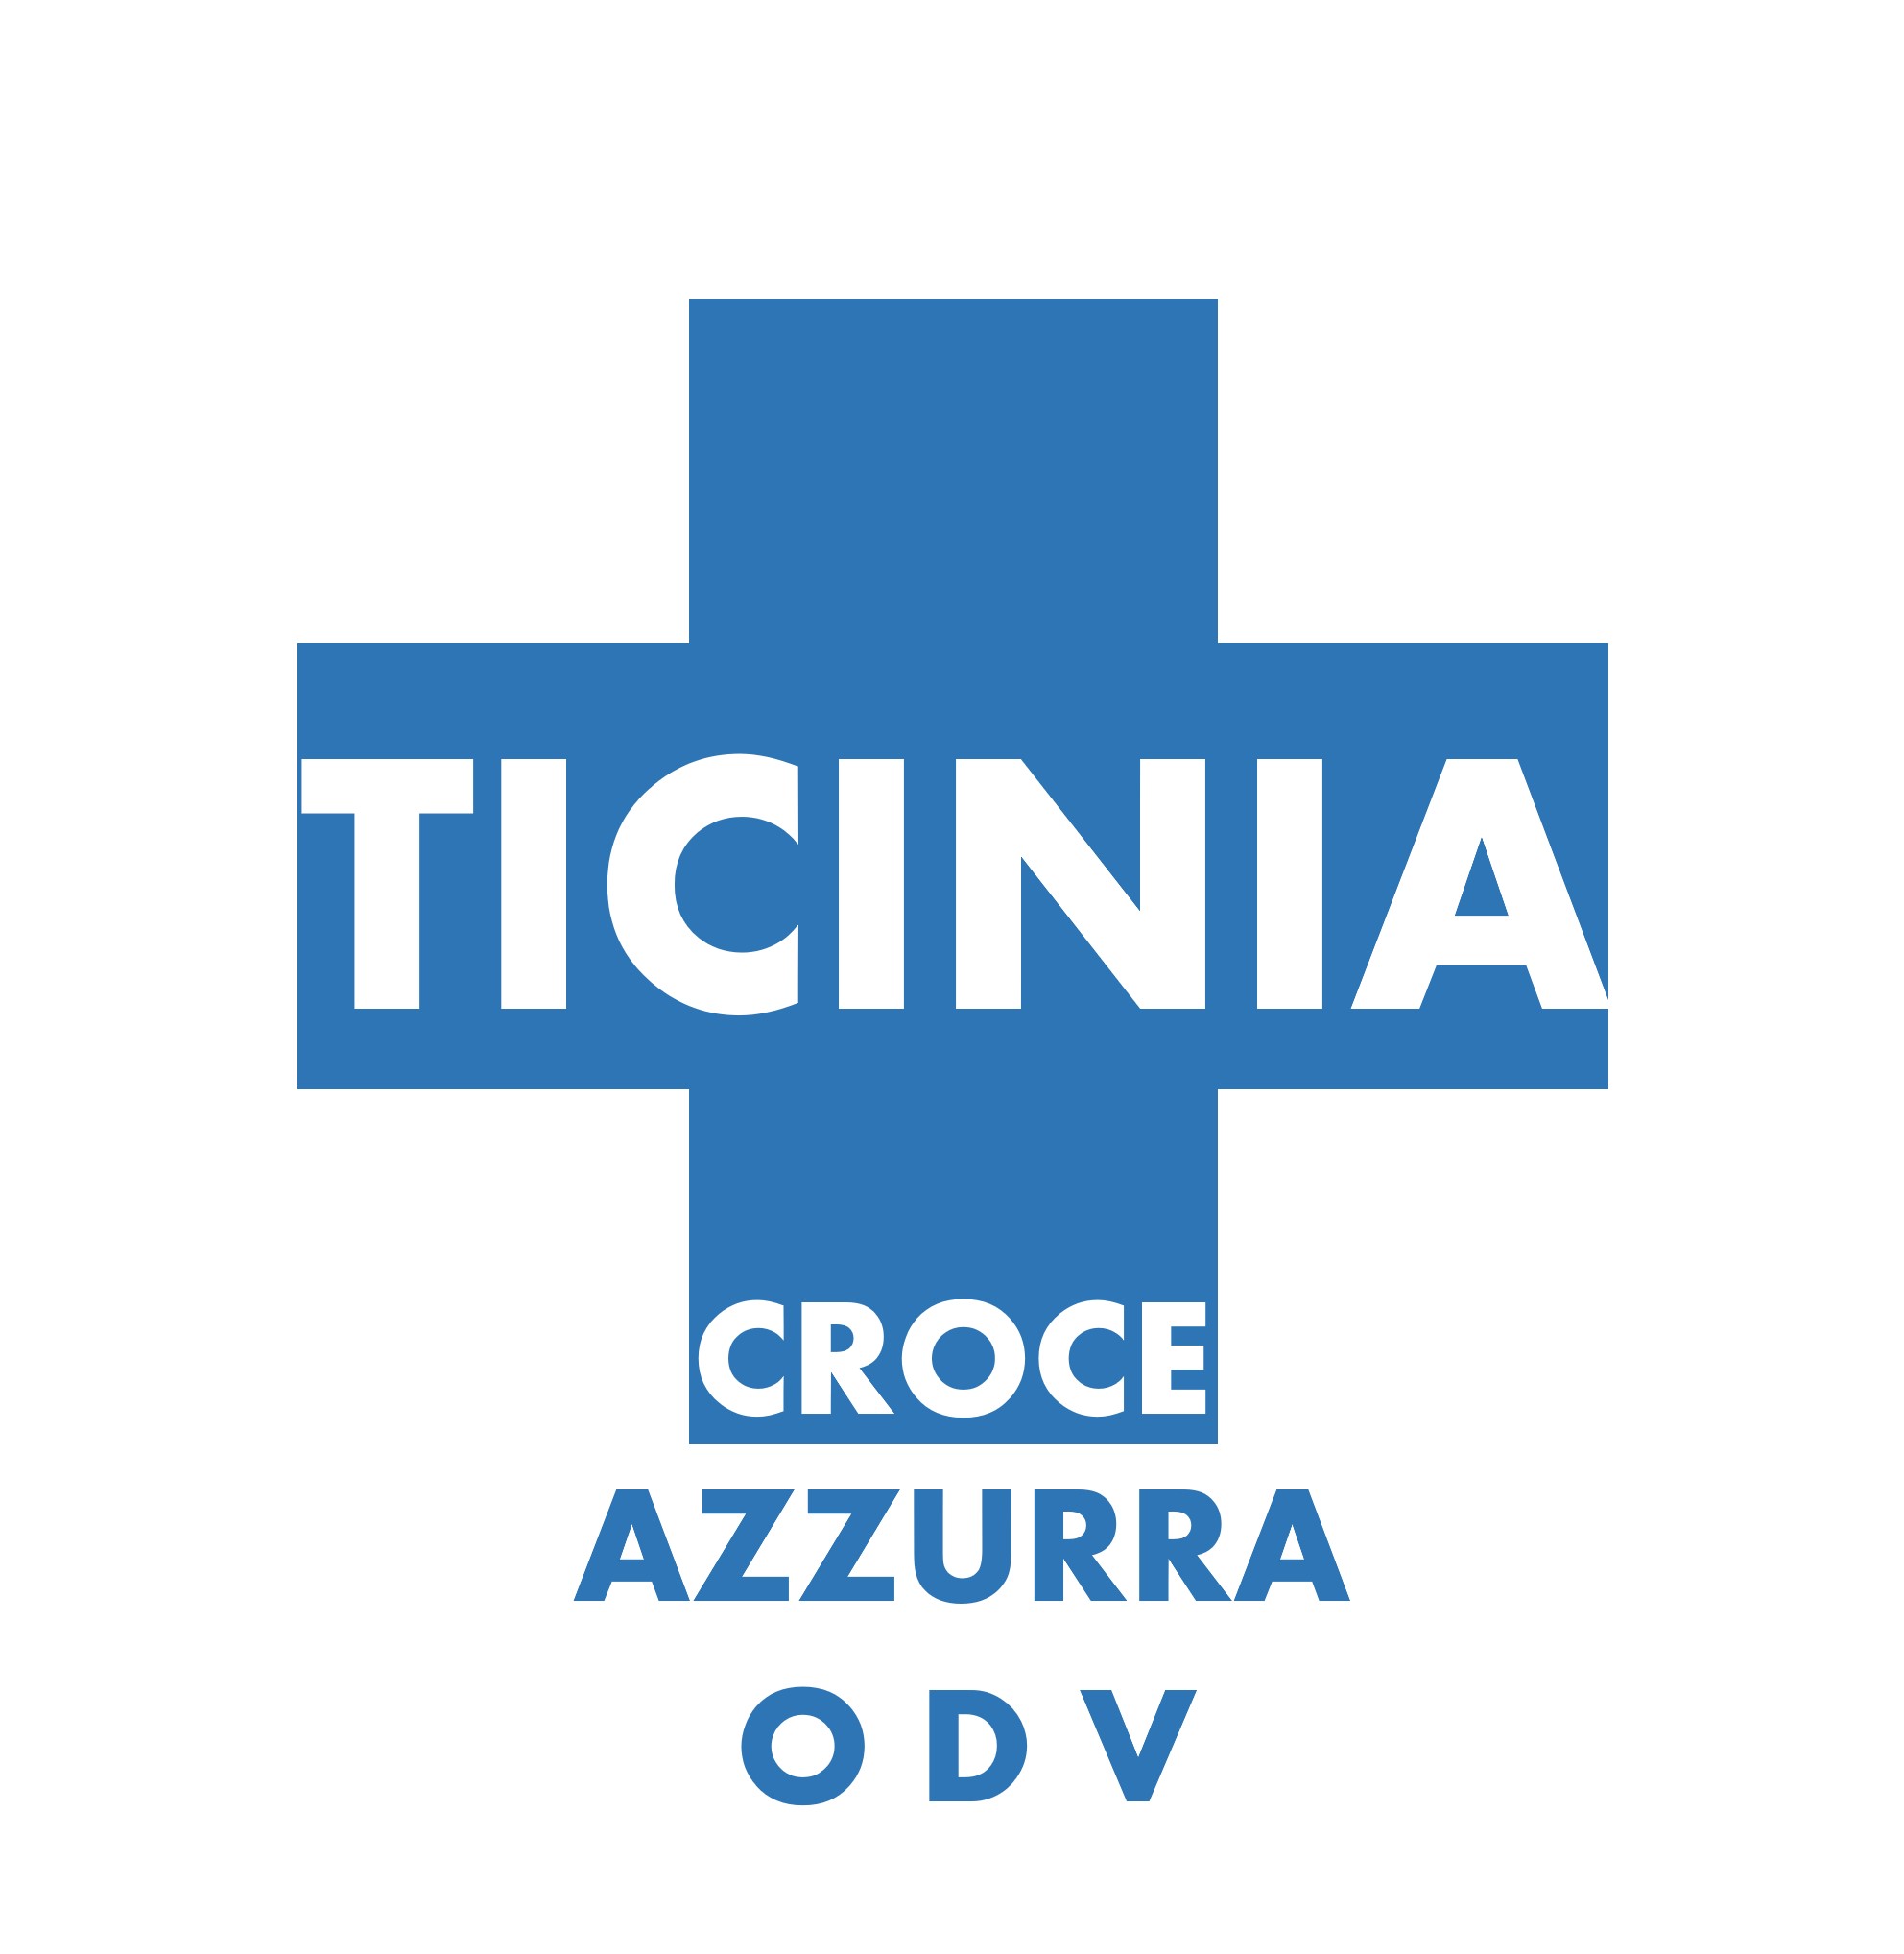 Archivio Storico Croce Azzurra Ticinia - Croce Azzurra Ticinia ODV - 2016 - Software dedicato